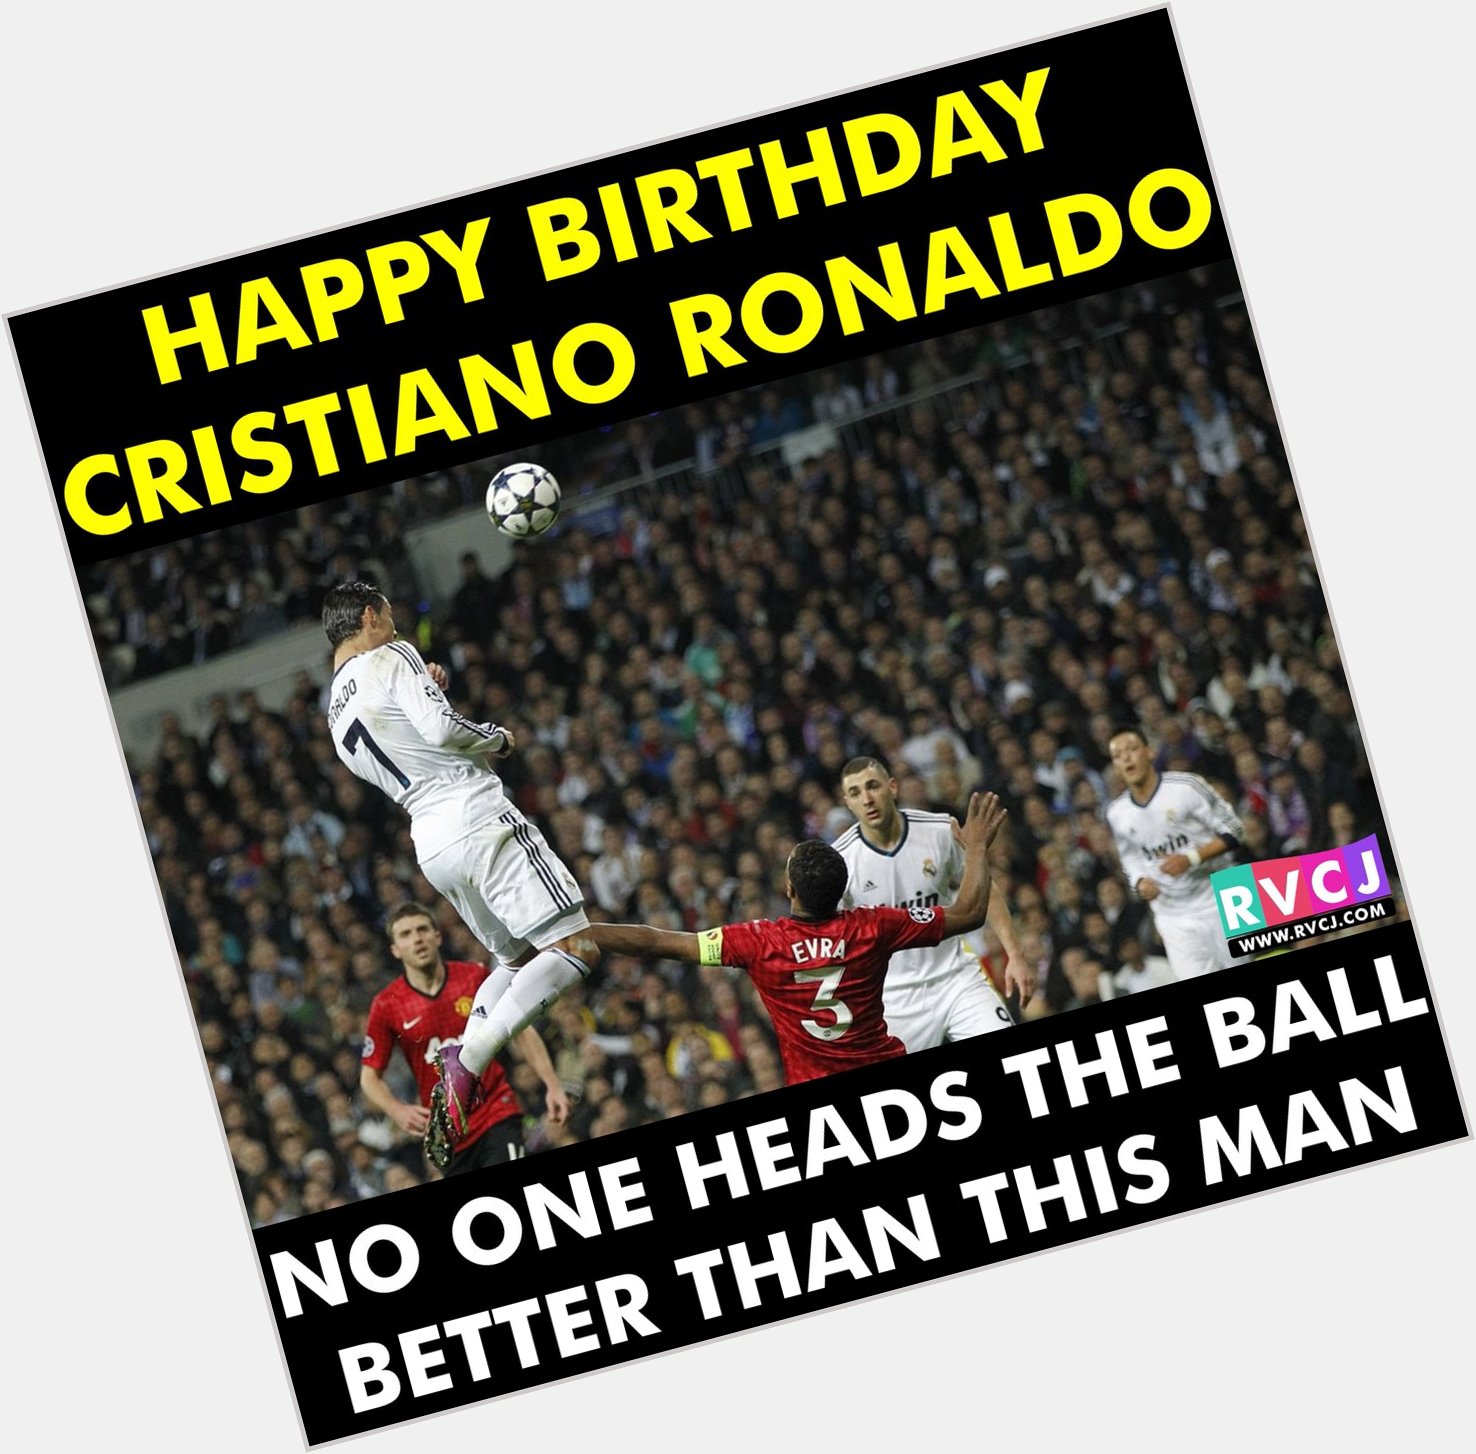 Happy Birthday Cristiano ronaldo 